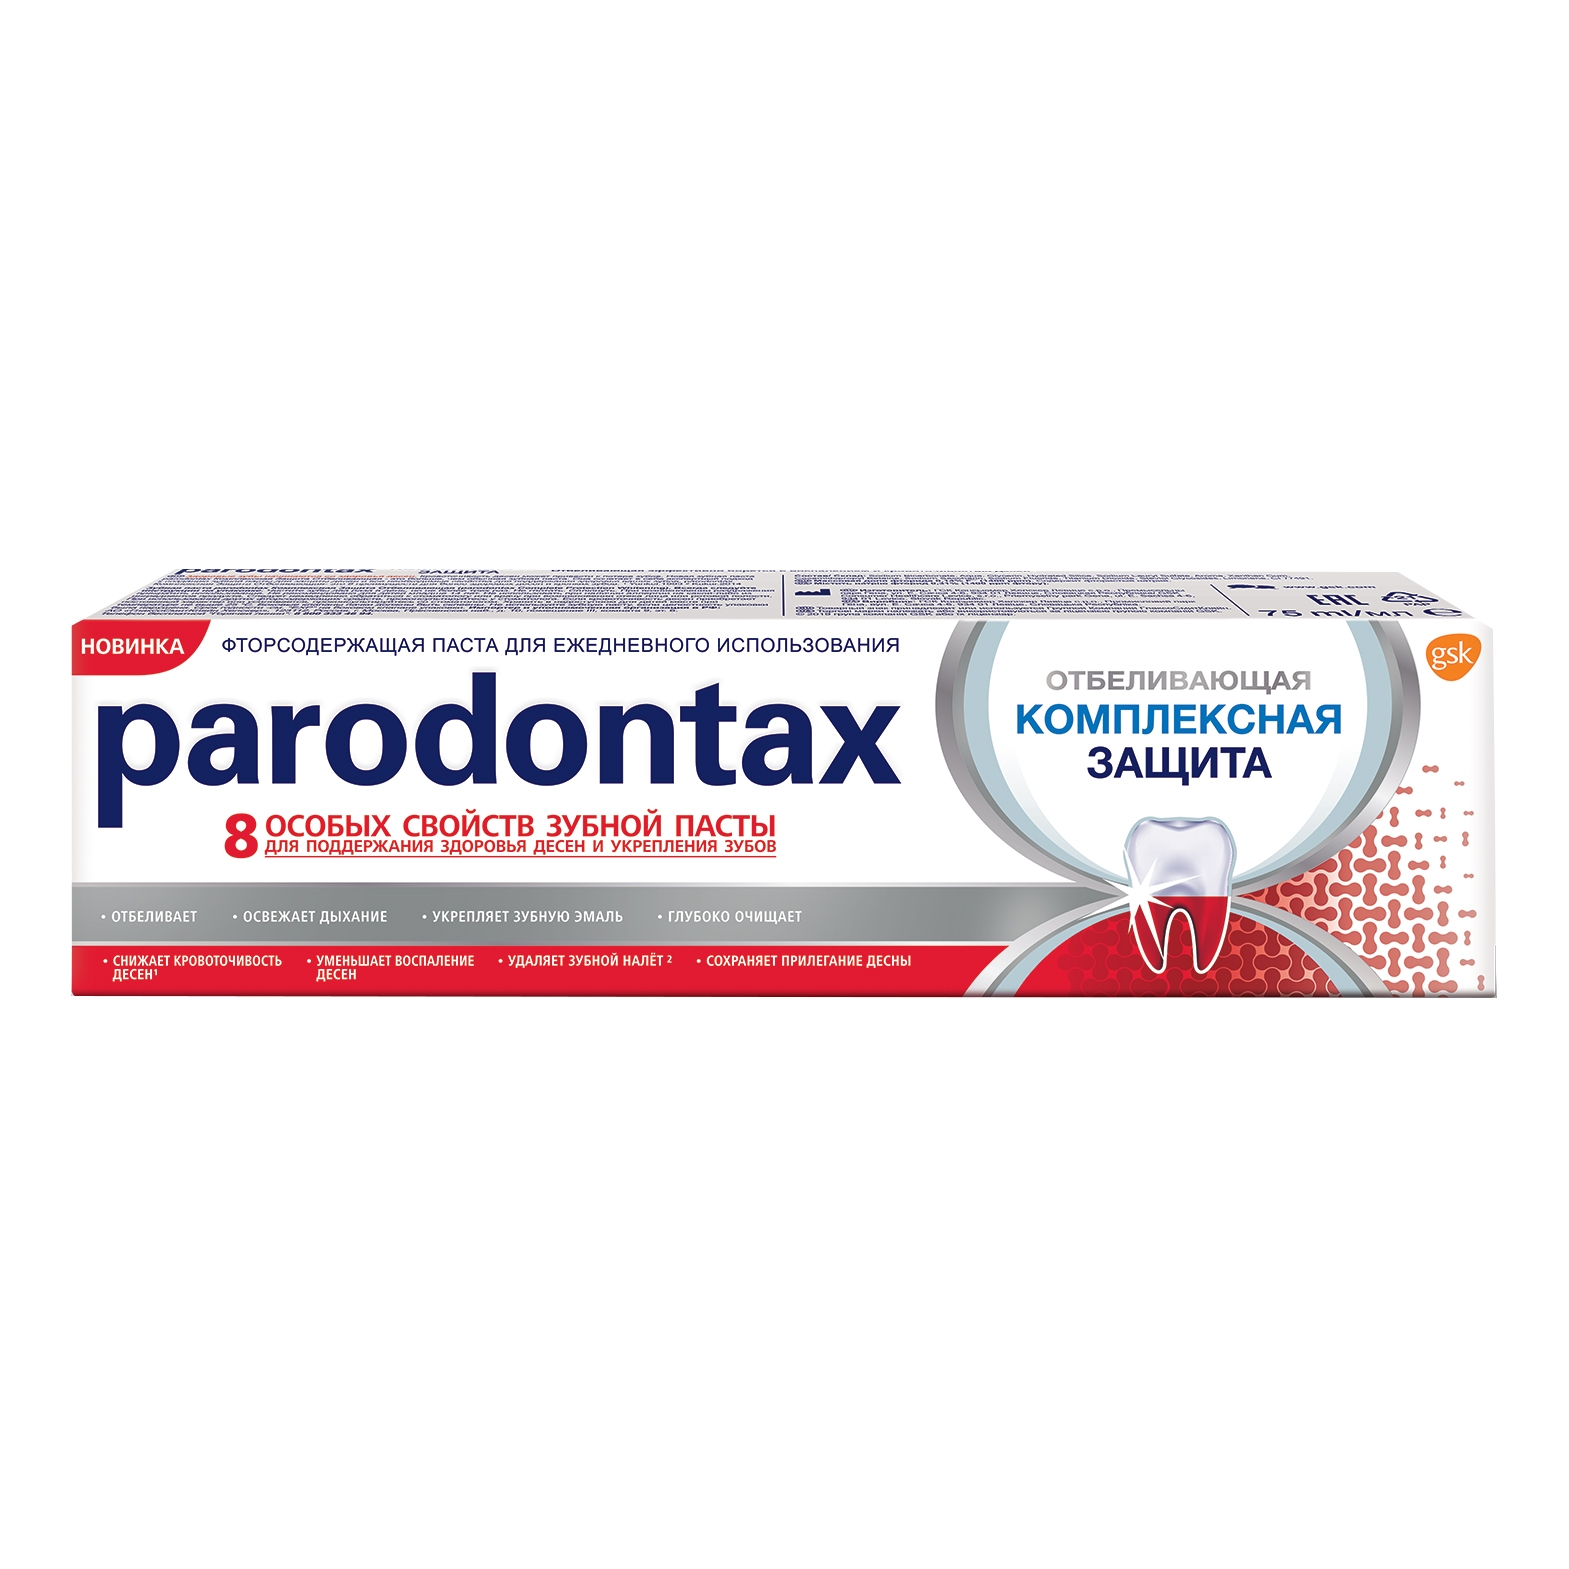 Зубная паста Parodontax Комплексная защита и отбеливание 75 мл зубная паста parodontax ультра очищение 75 мл